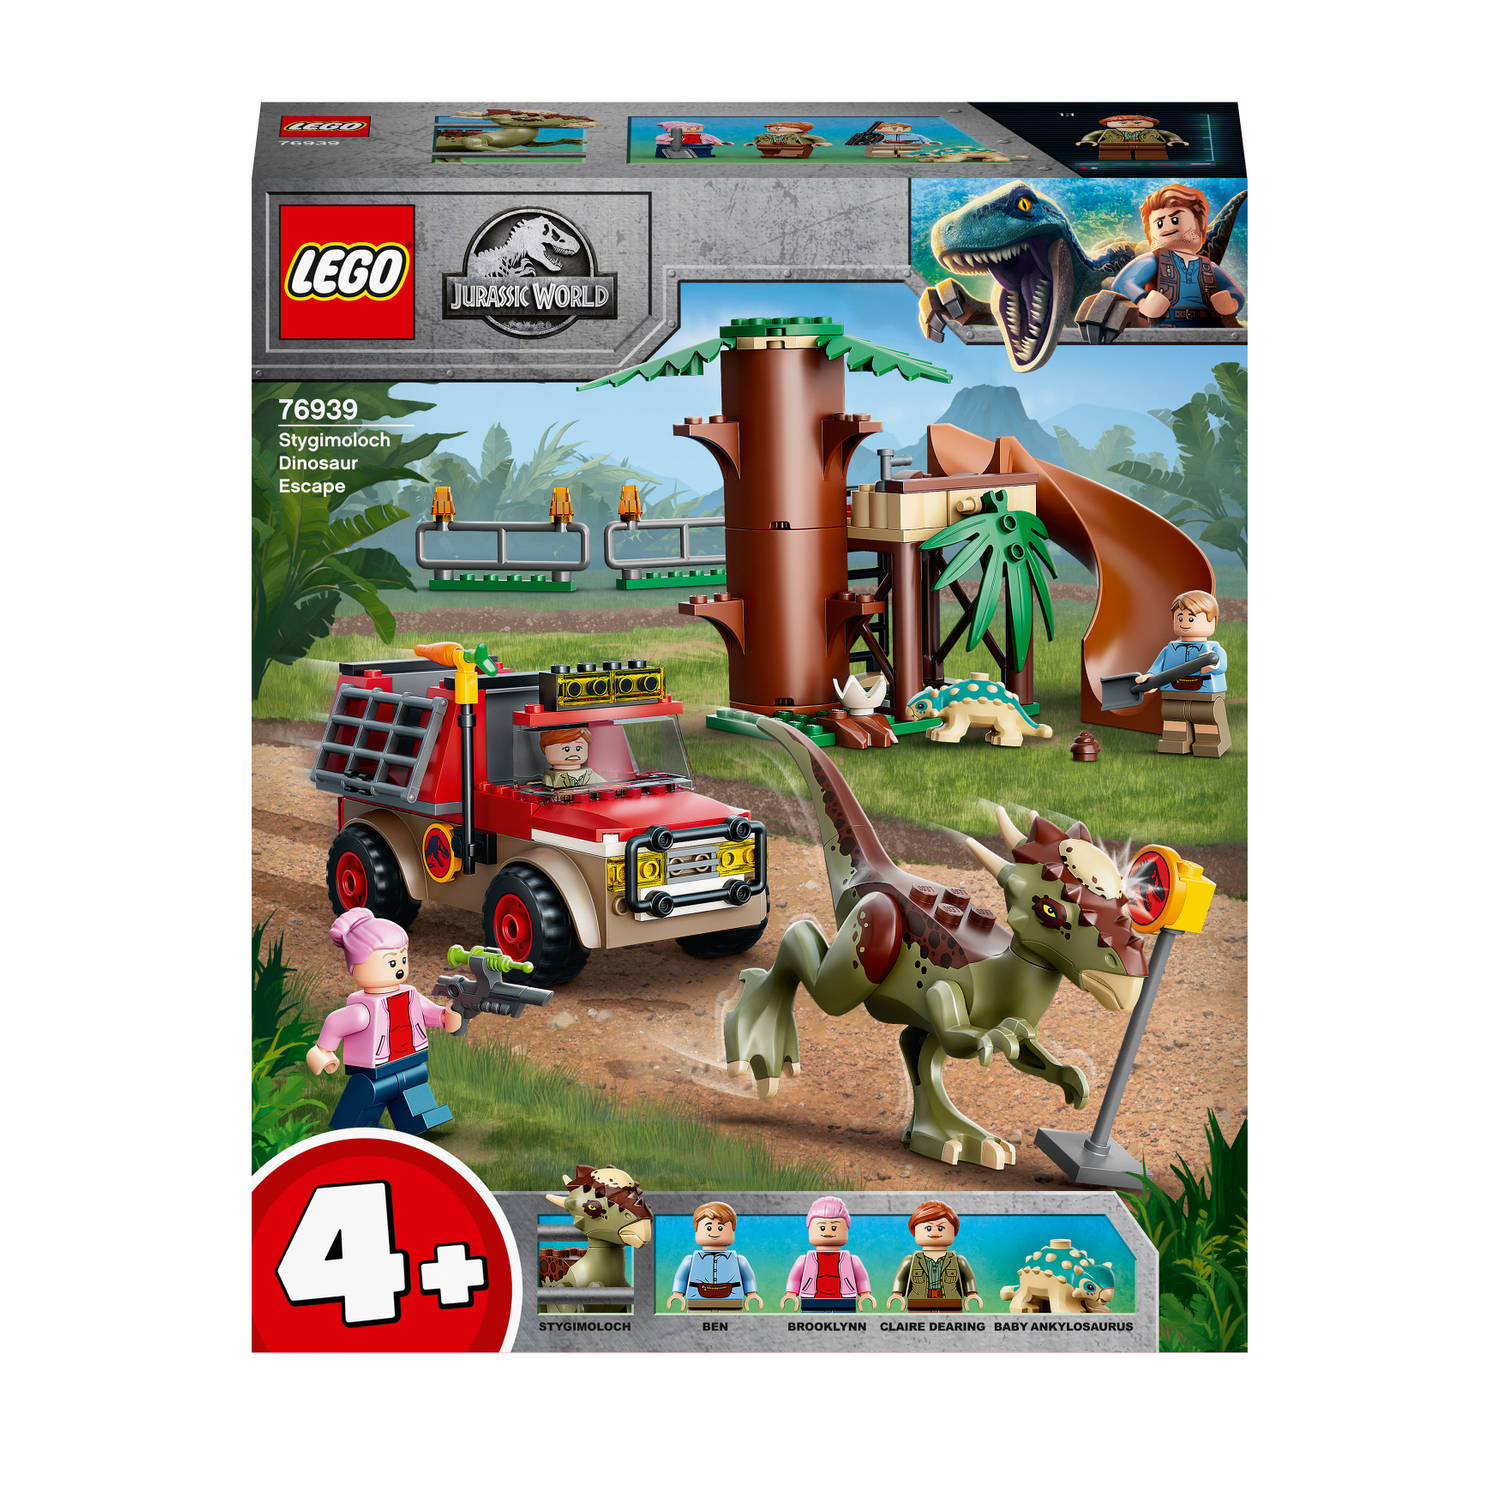 LEGO Jurrasic World 76939